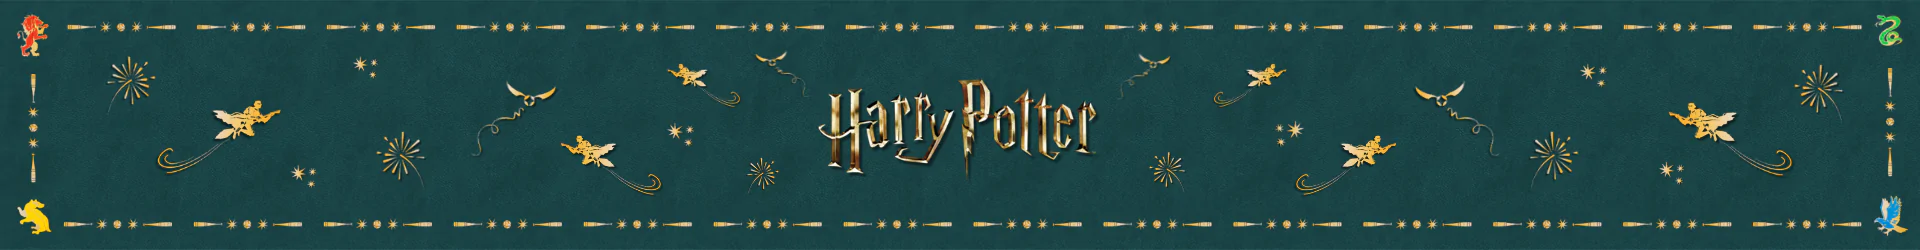 Harry Potter fehérneműk banner